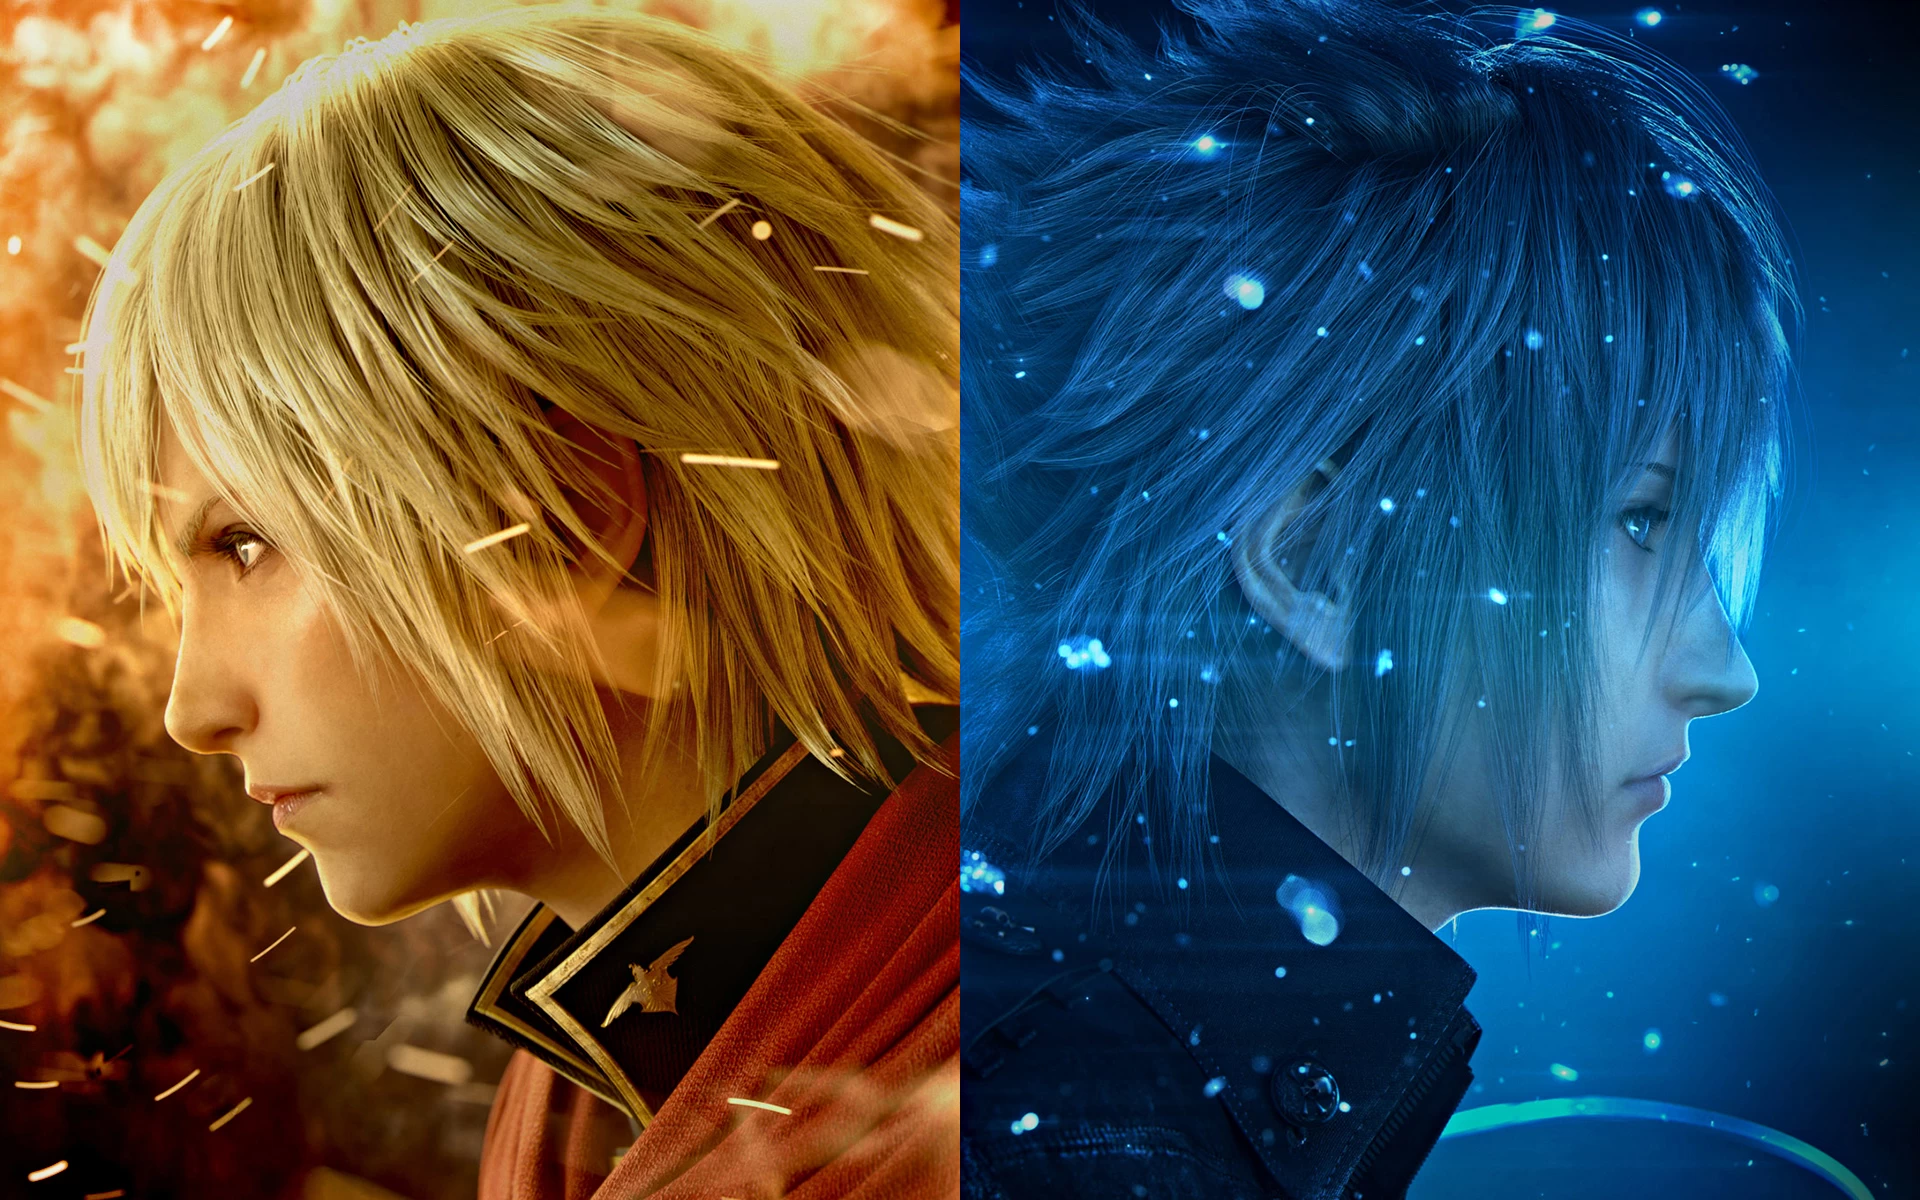 final fantasy type 0 hd wide | Final Fantasy | [ชวนคุยยามเช้า] Square-Enix มาถูกทางแล้ว กับเกมส์ Final Fantasy ยุคใหม่ ทั้งบนคอนโซลและมือถือ